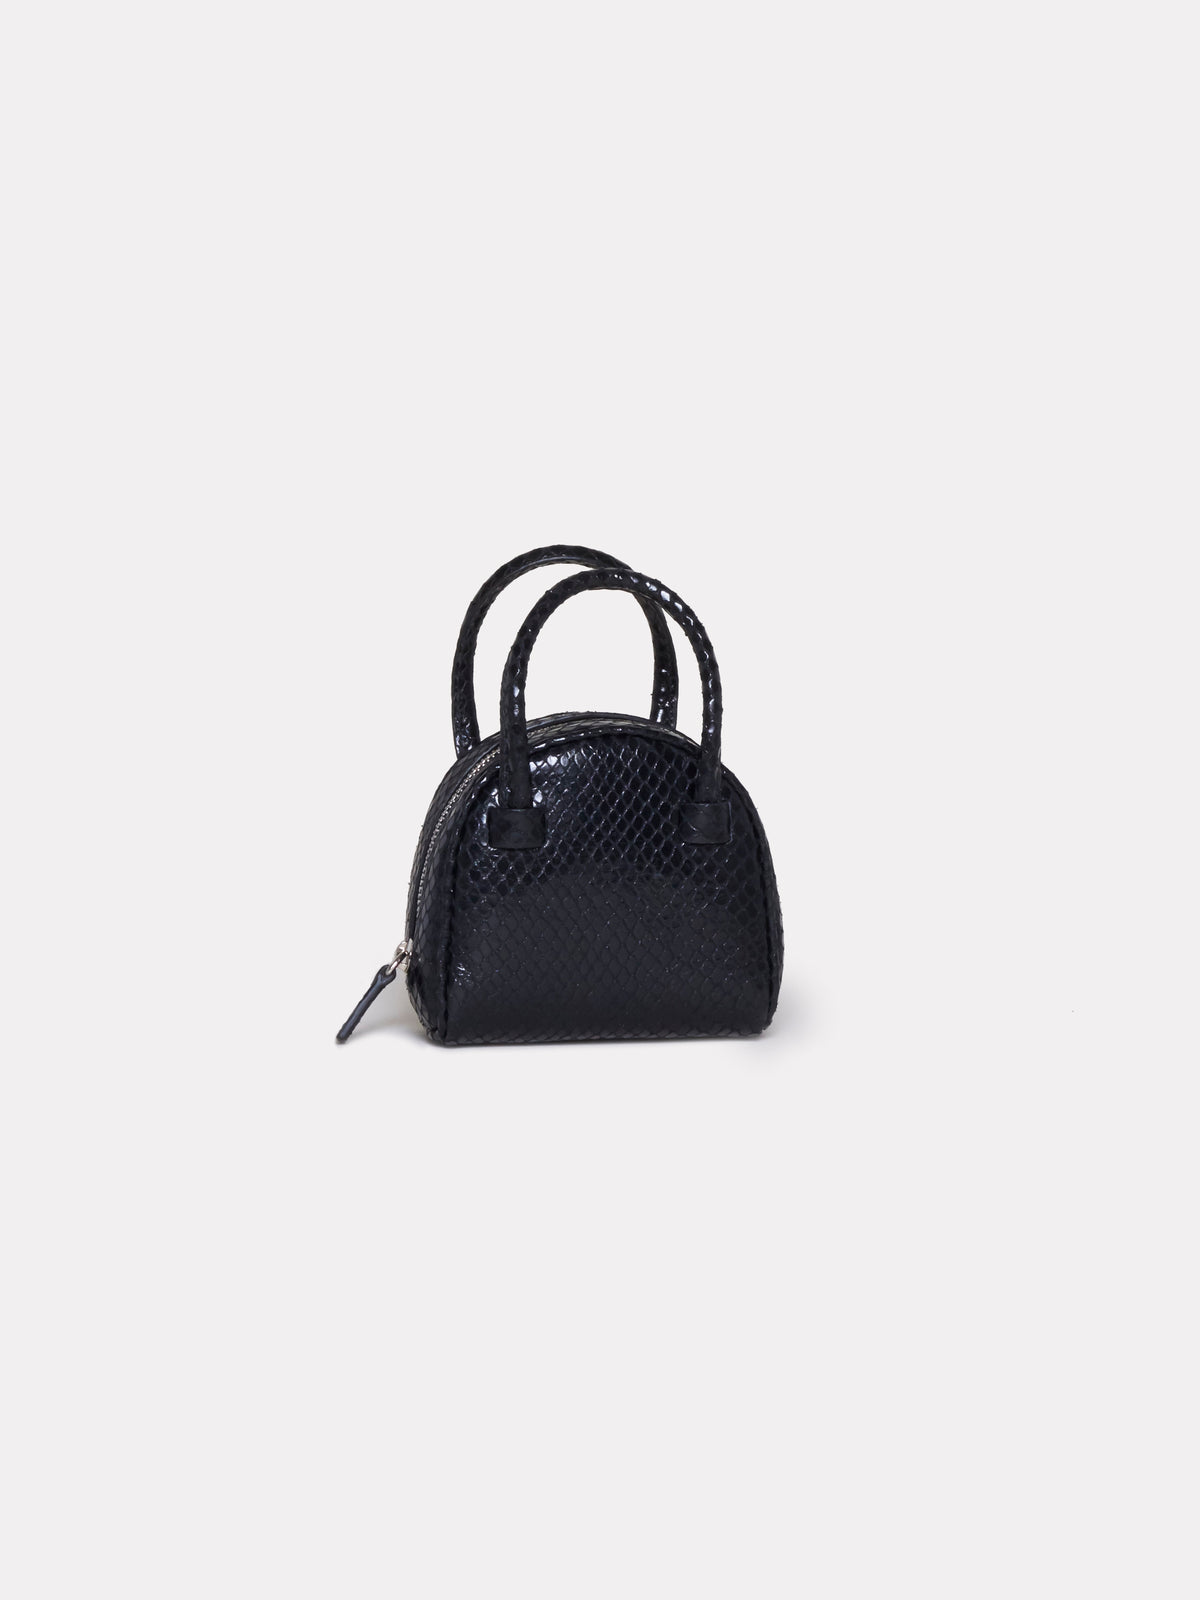 Black Python Mini Bag